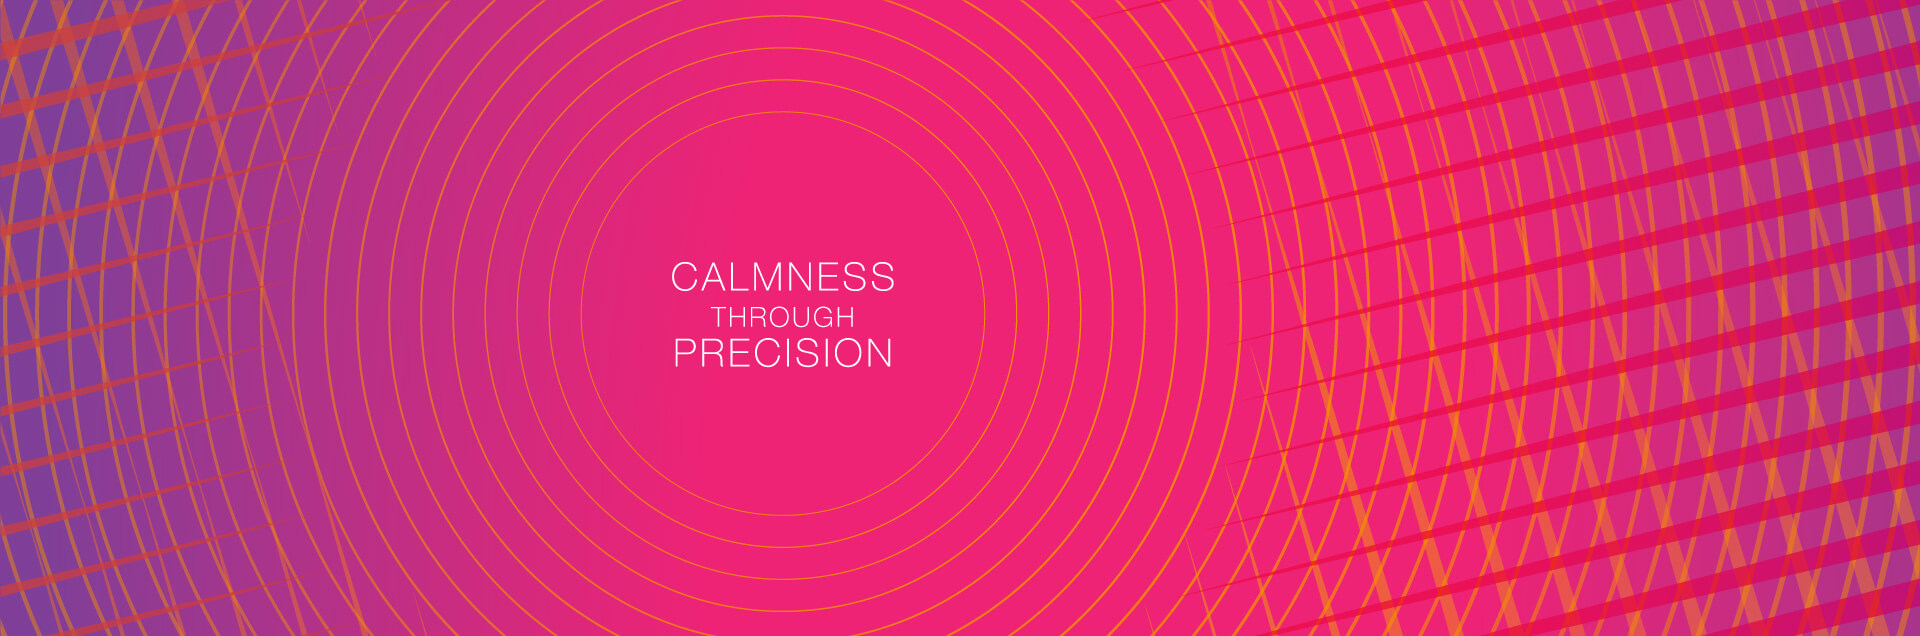 Stereotaxy - Calmness through precision